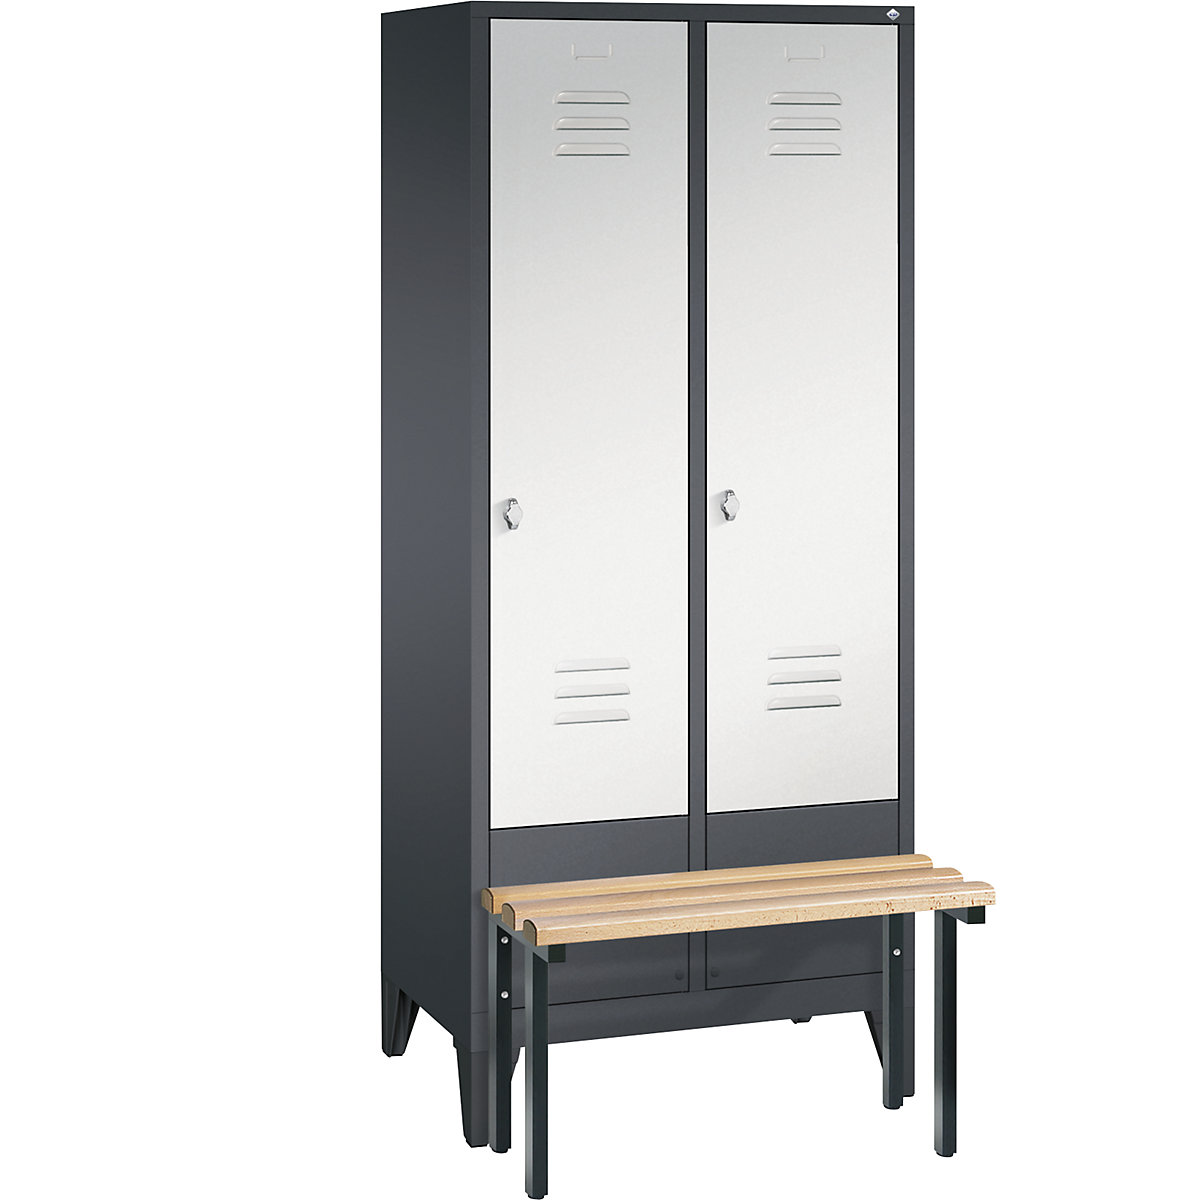 Garderobna omara CLASSIC s klopjo – C+P, 2 predelka, širina 400 mm/predelek, črno sive / svetlo sive barve-8